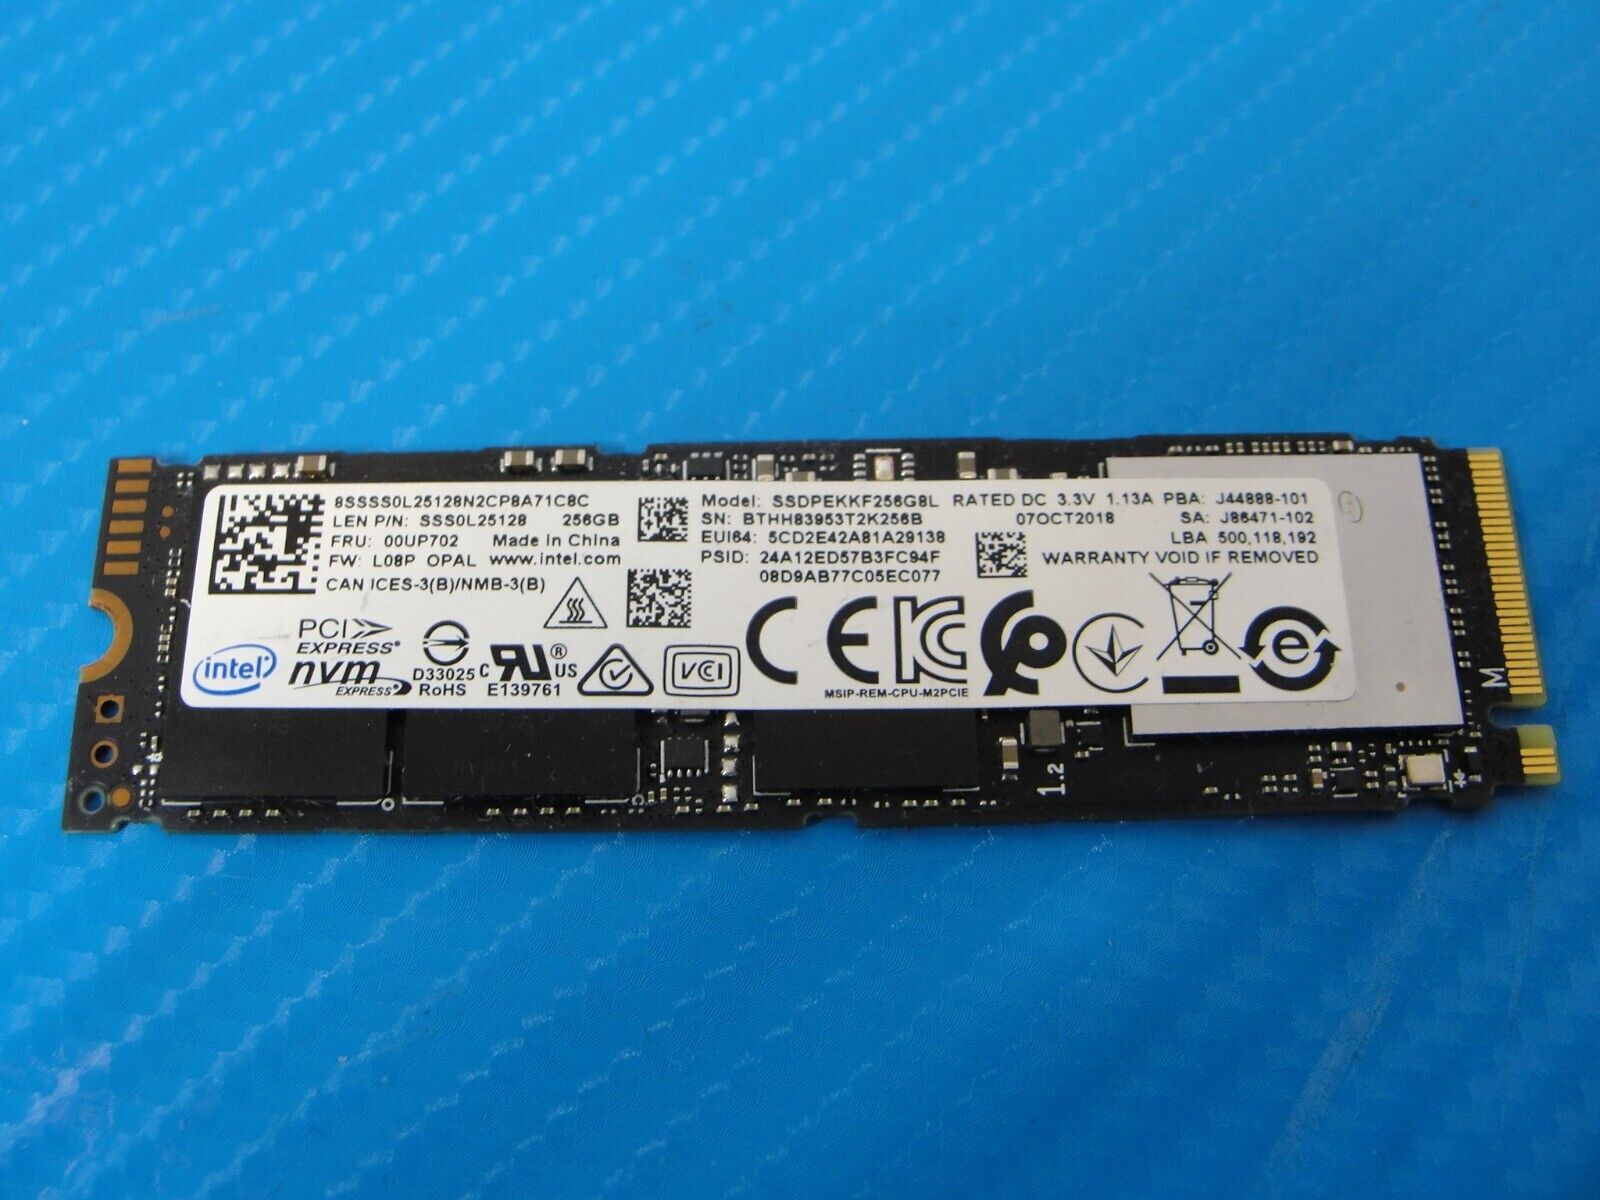 Intel SSD Pro 7600p Series SSDPEKKF256G8L 256GB NVMe M.2 80mm SSD SSS0L25128